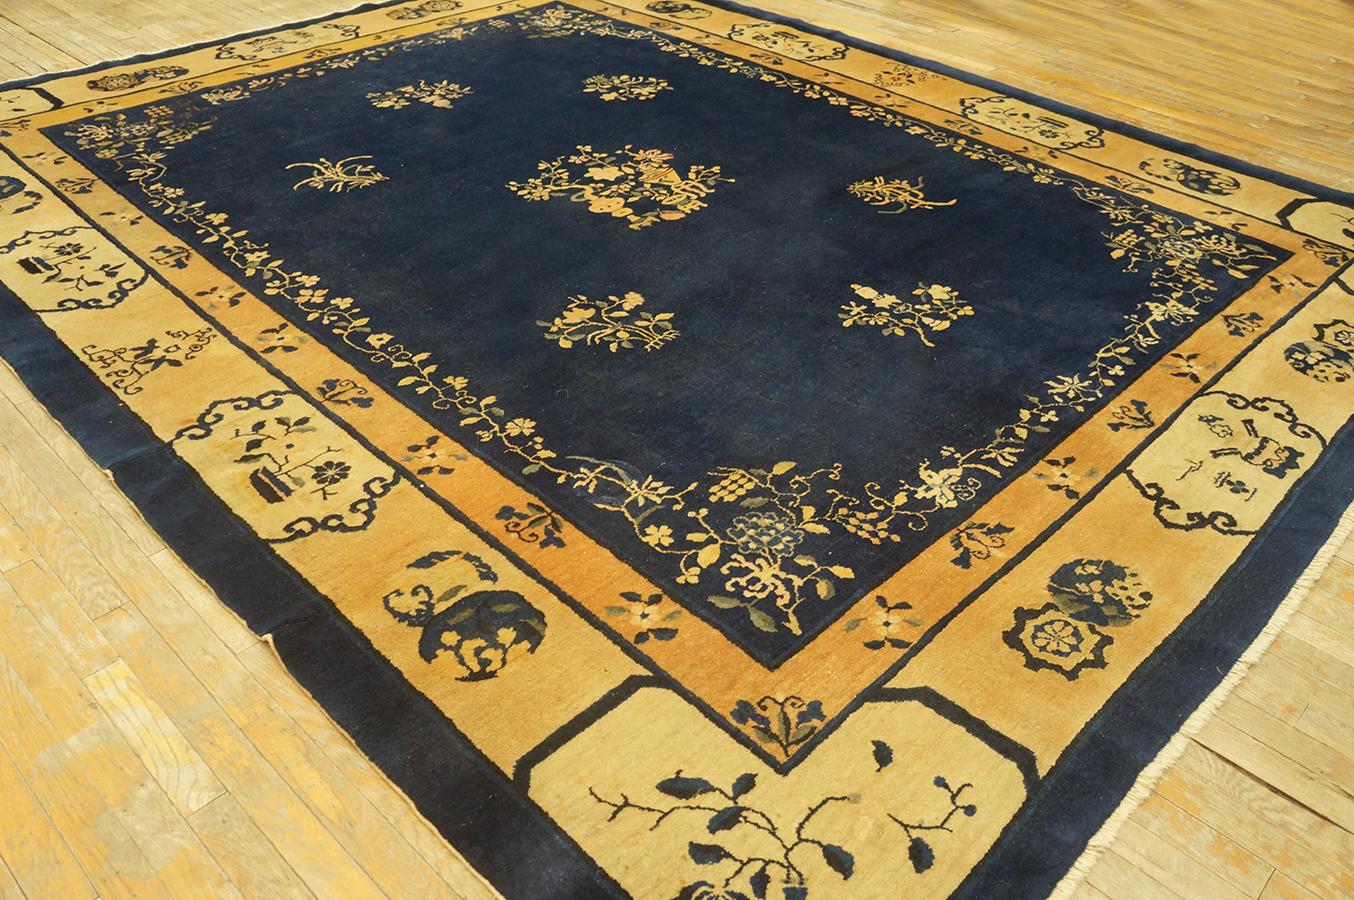 Antique Chinese Peking rug, Size: 9' 2'' x 11' 6''.